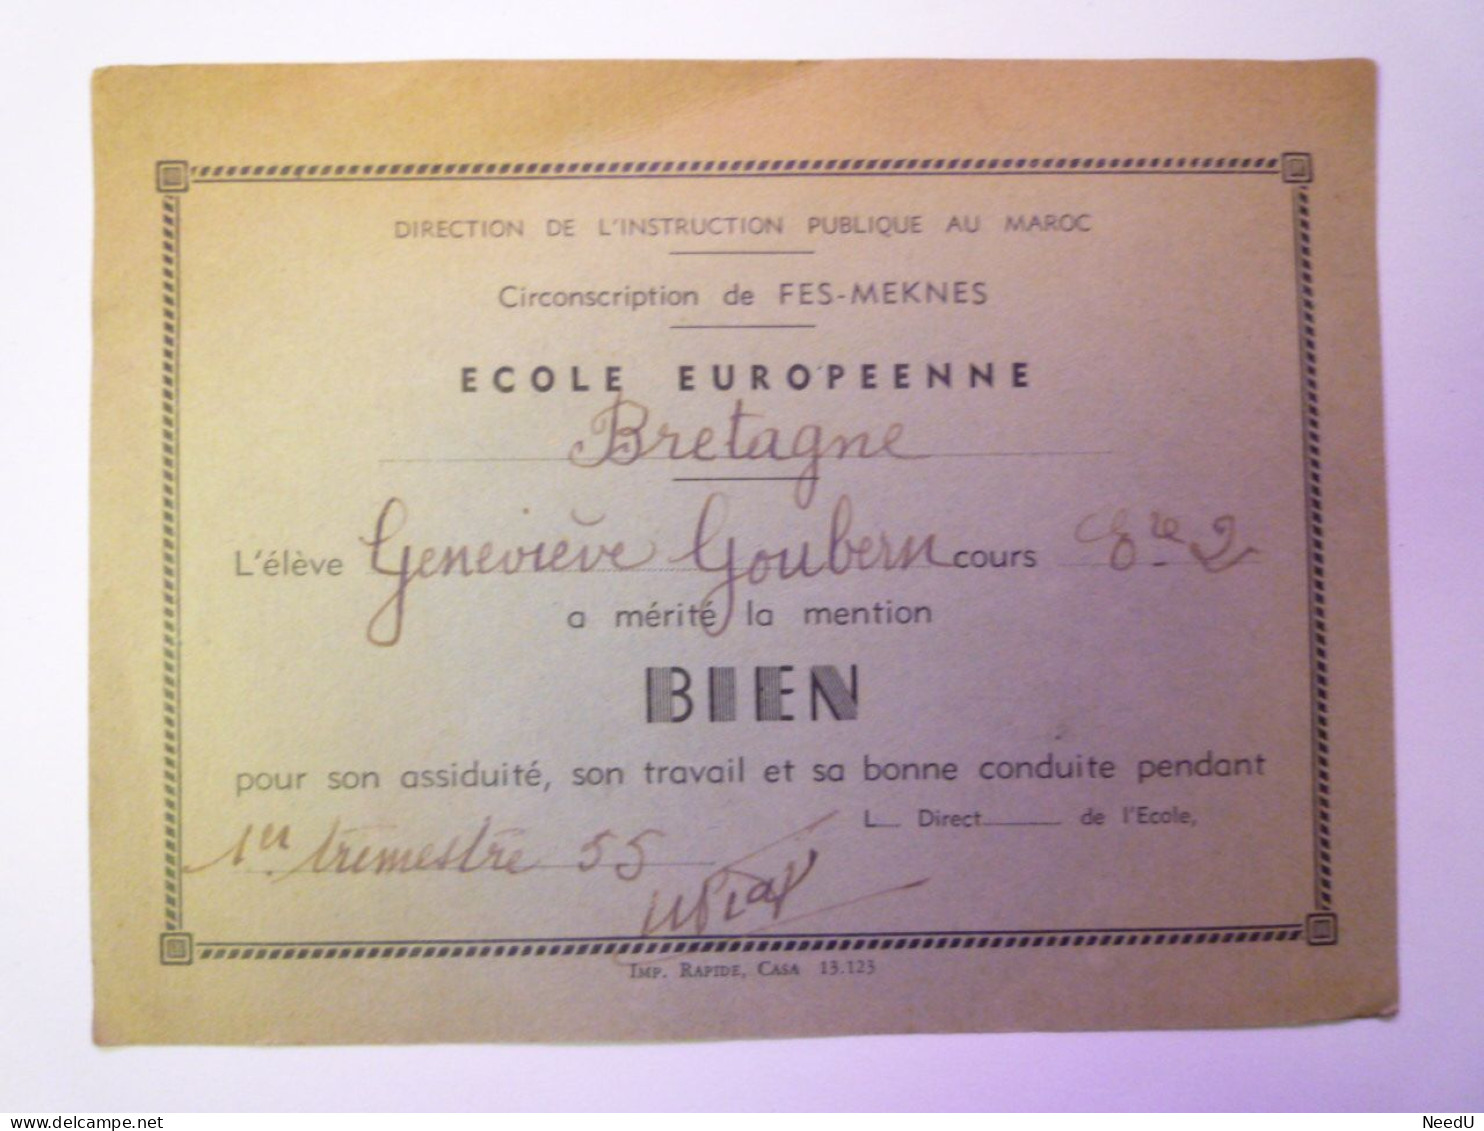 GP 2024 - 4  ECOLE EUROPEENNE  "BRETAGNE"  (Maroc  -  FES-MEKNES)  MENTION BIEN  1955   XXX - Diploma's En Schoolrapporten